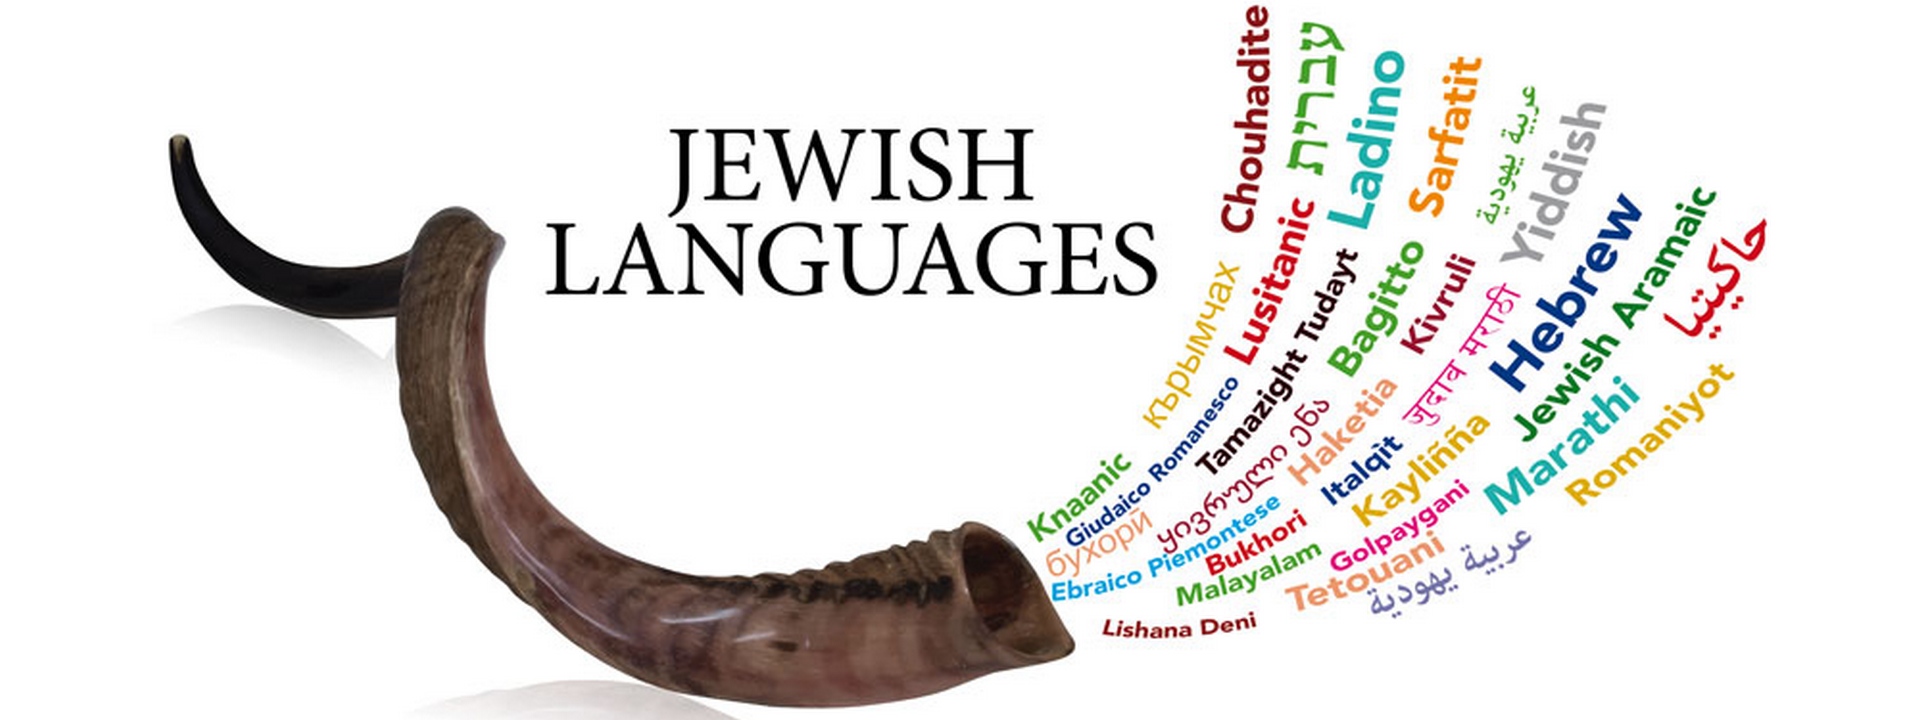 European Days 2016: Jewish Languages